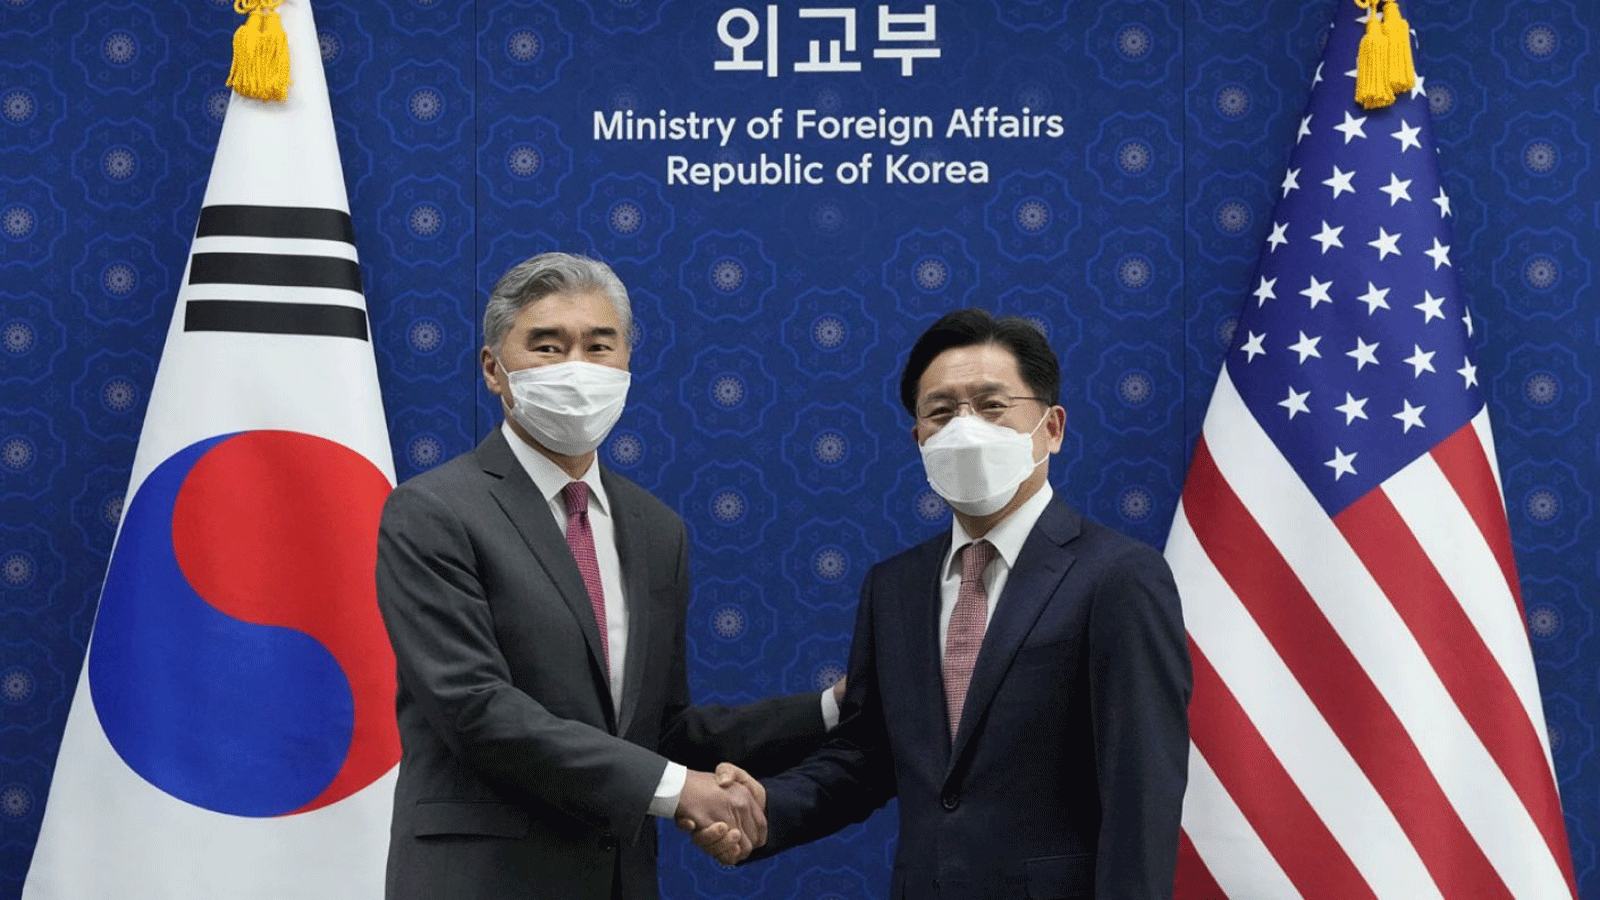 الممثل الأميريكي الخاص لكوريا الشمالية سونغ كيم (يسار) يصافح الممثل الخاص لكوريا الجنوبية لشؤون السلام والأمن في شبه الجزيرة الكورية نوه كيو دوك (يمين) خلال اجتماعهما في وزارة الخارجية في سيول في 18 نيسان\أبريل 2022.